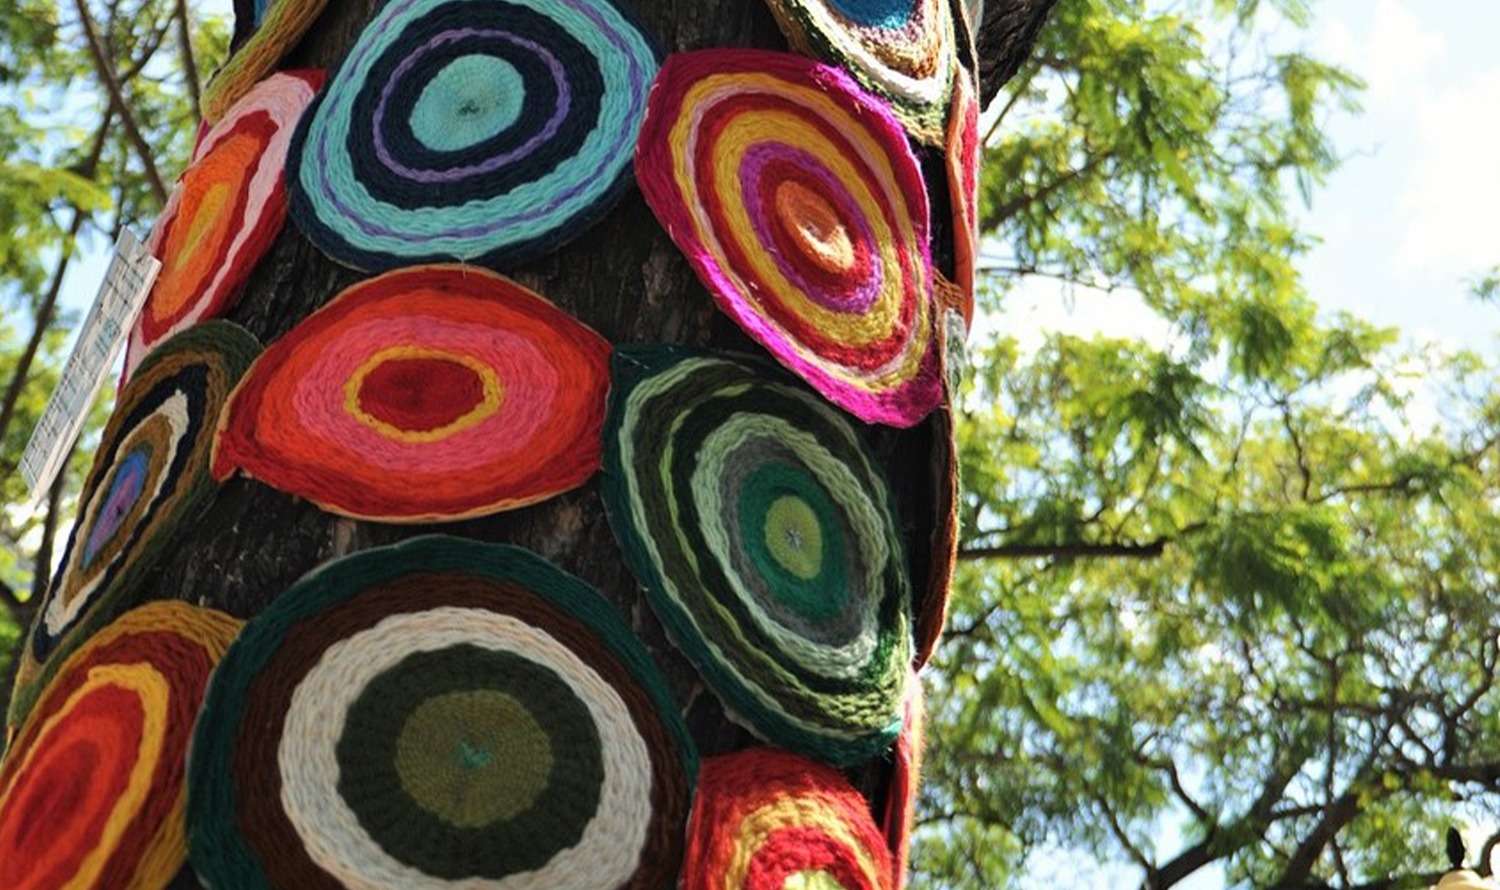 بسیاری از کوسن های گرد و رنگارنگ صندلی بر روی درخت آویزان شده اند.